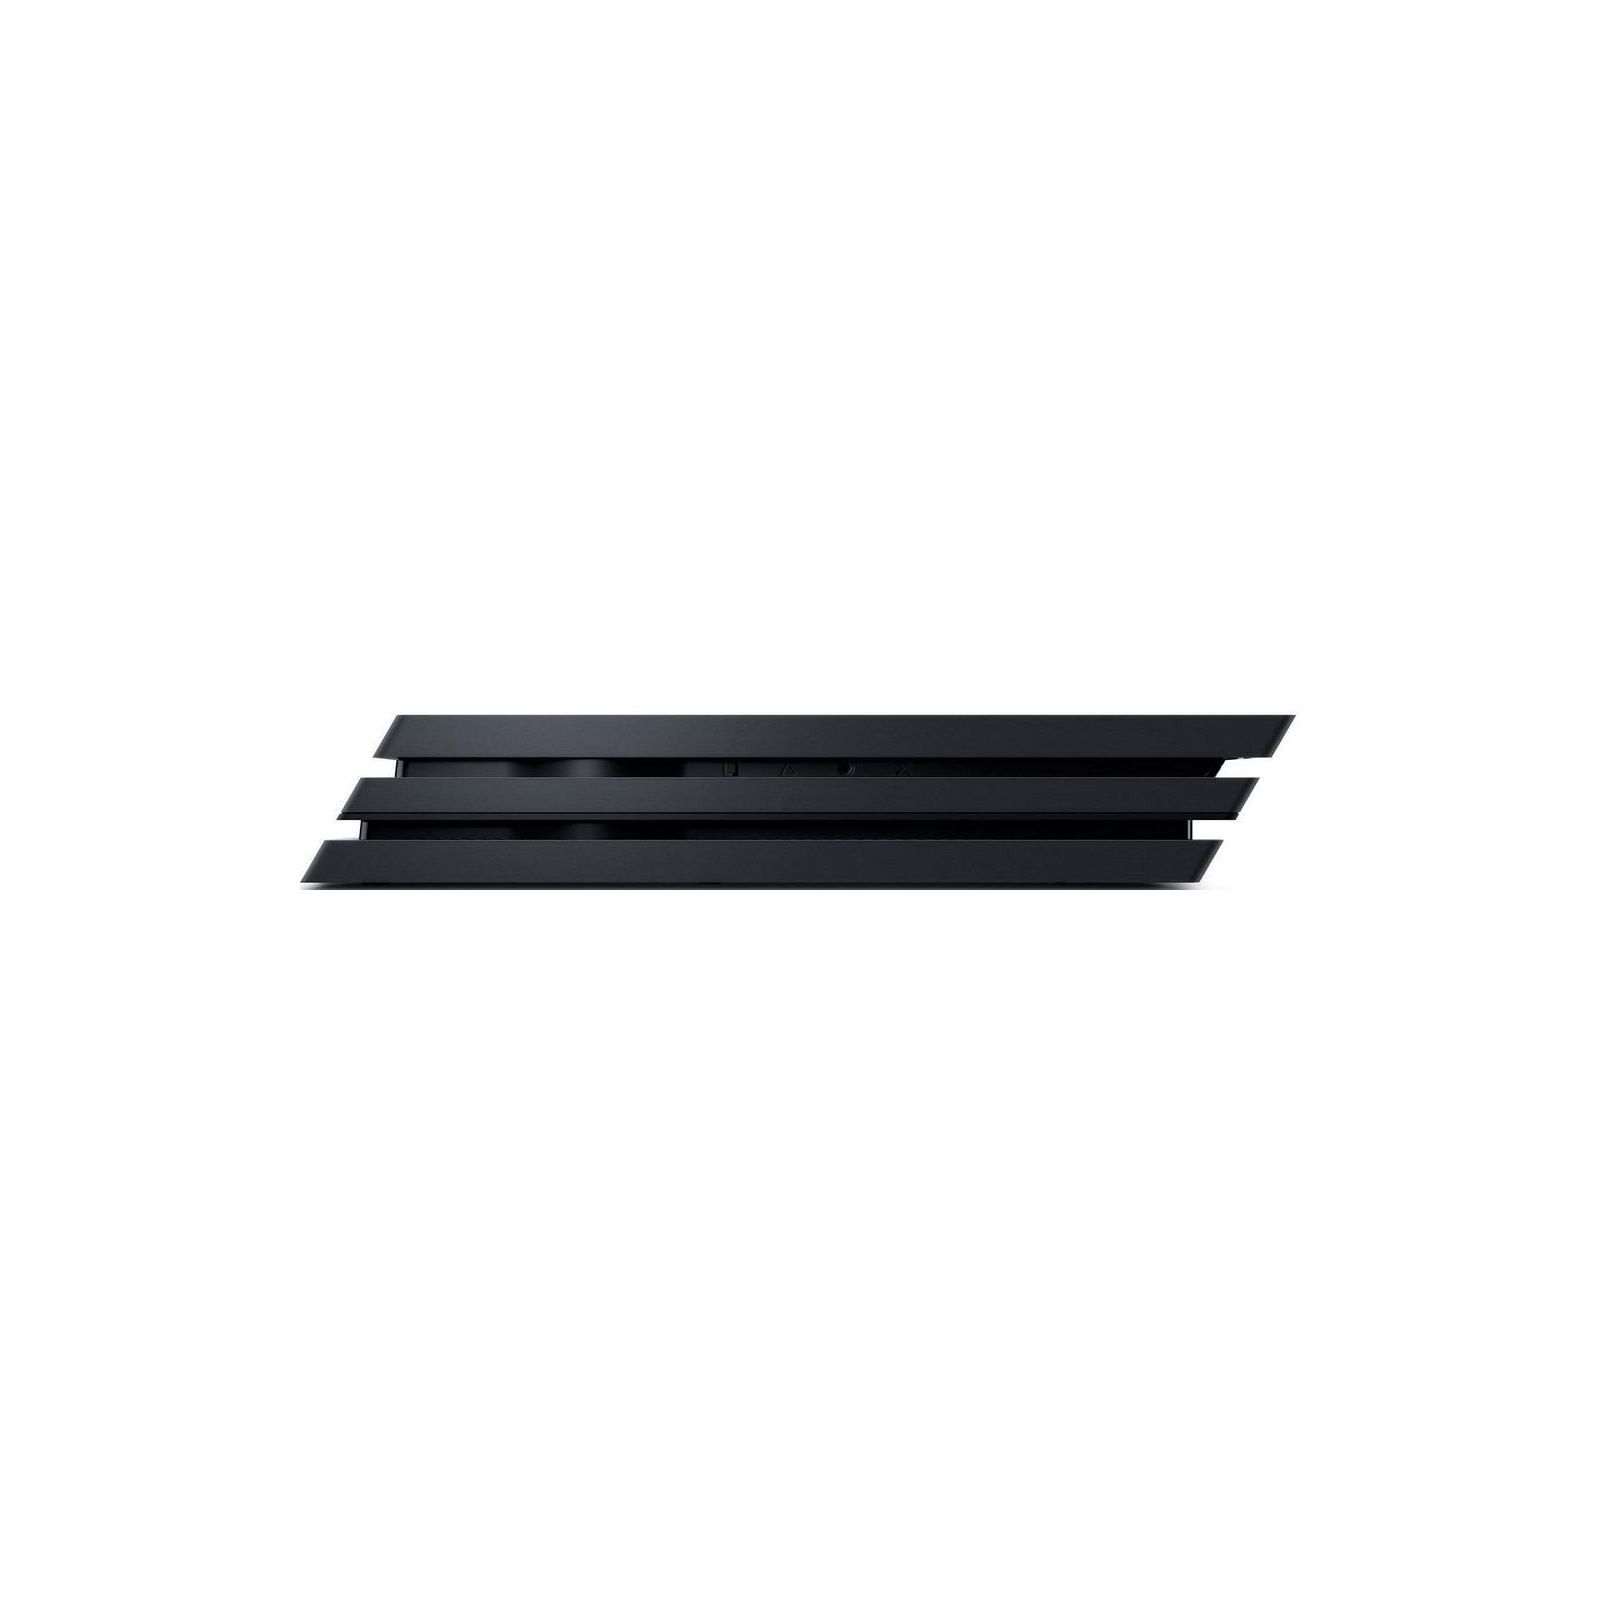 Игровая консоль Sony PlayStation 4 Pro 1TB black (CUH-7108B) изображение 11